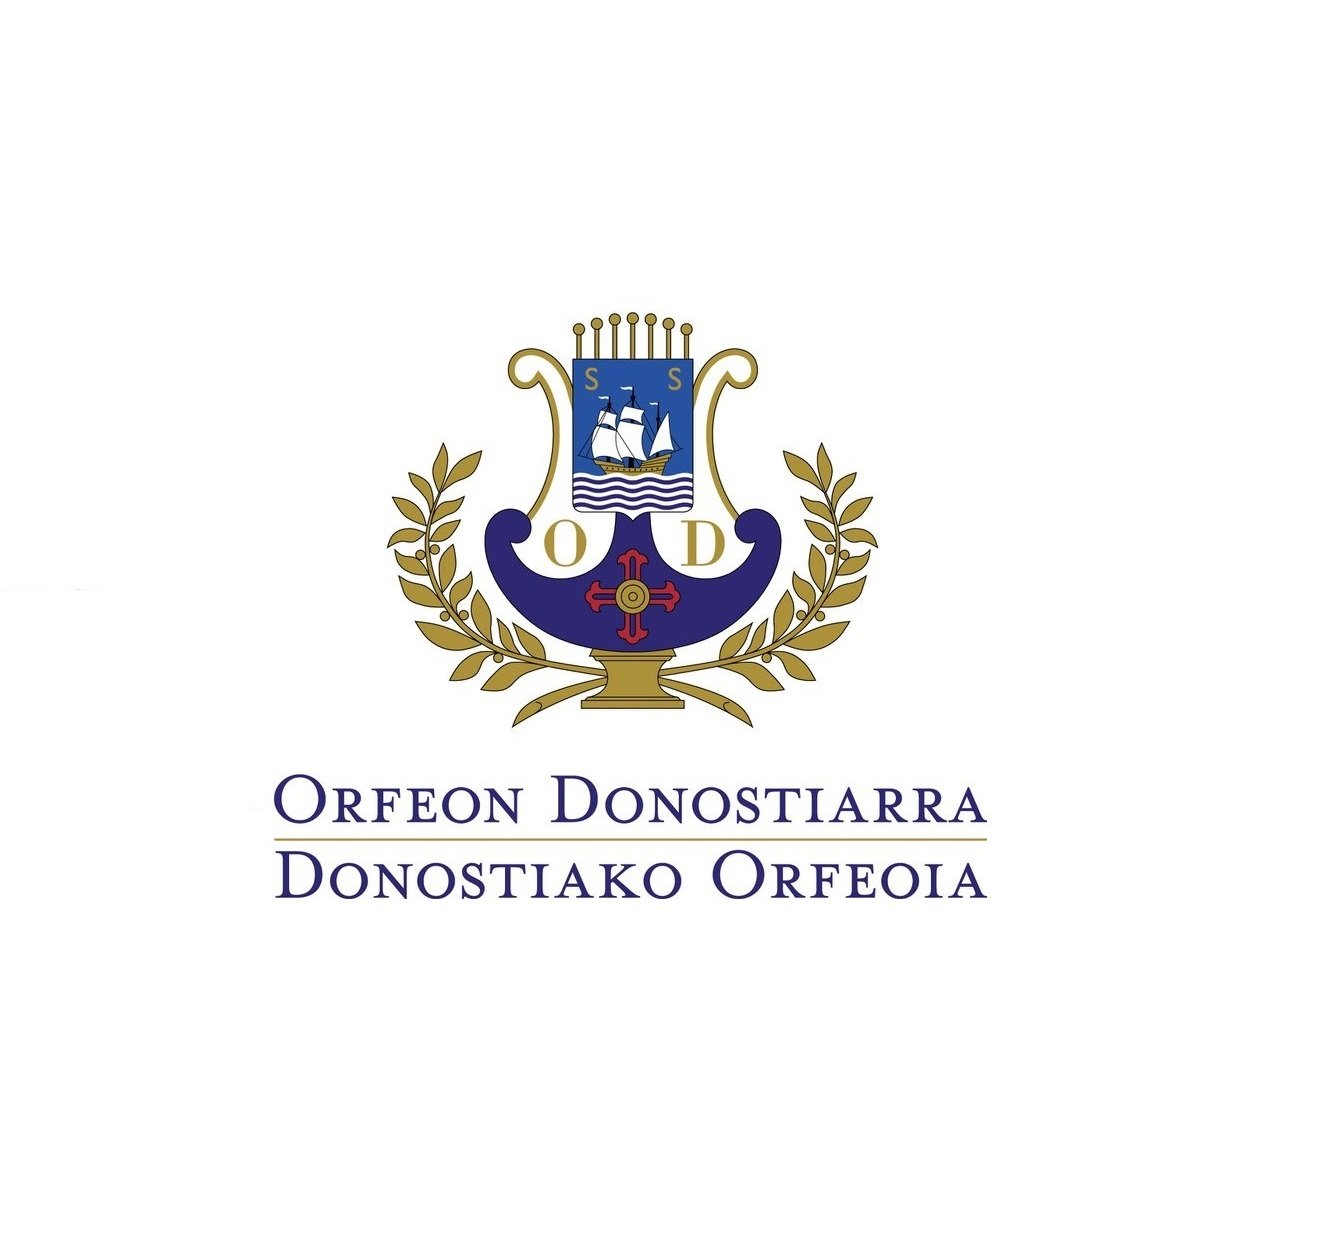 Orfeón Donostiarra - Donostiako Orfeoia